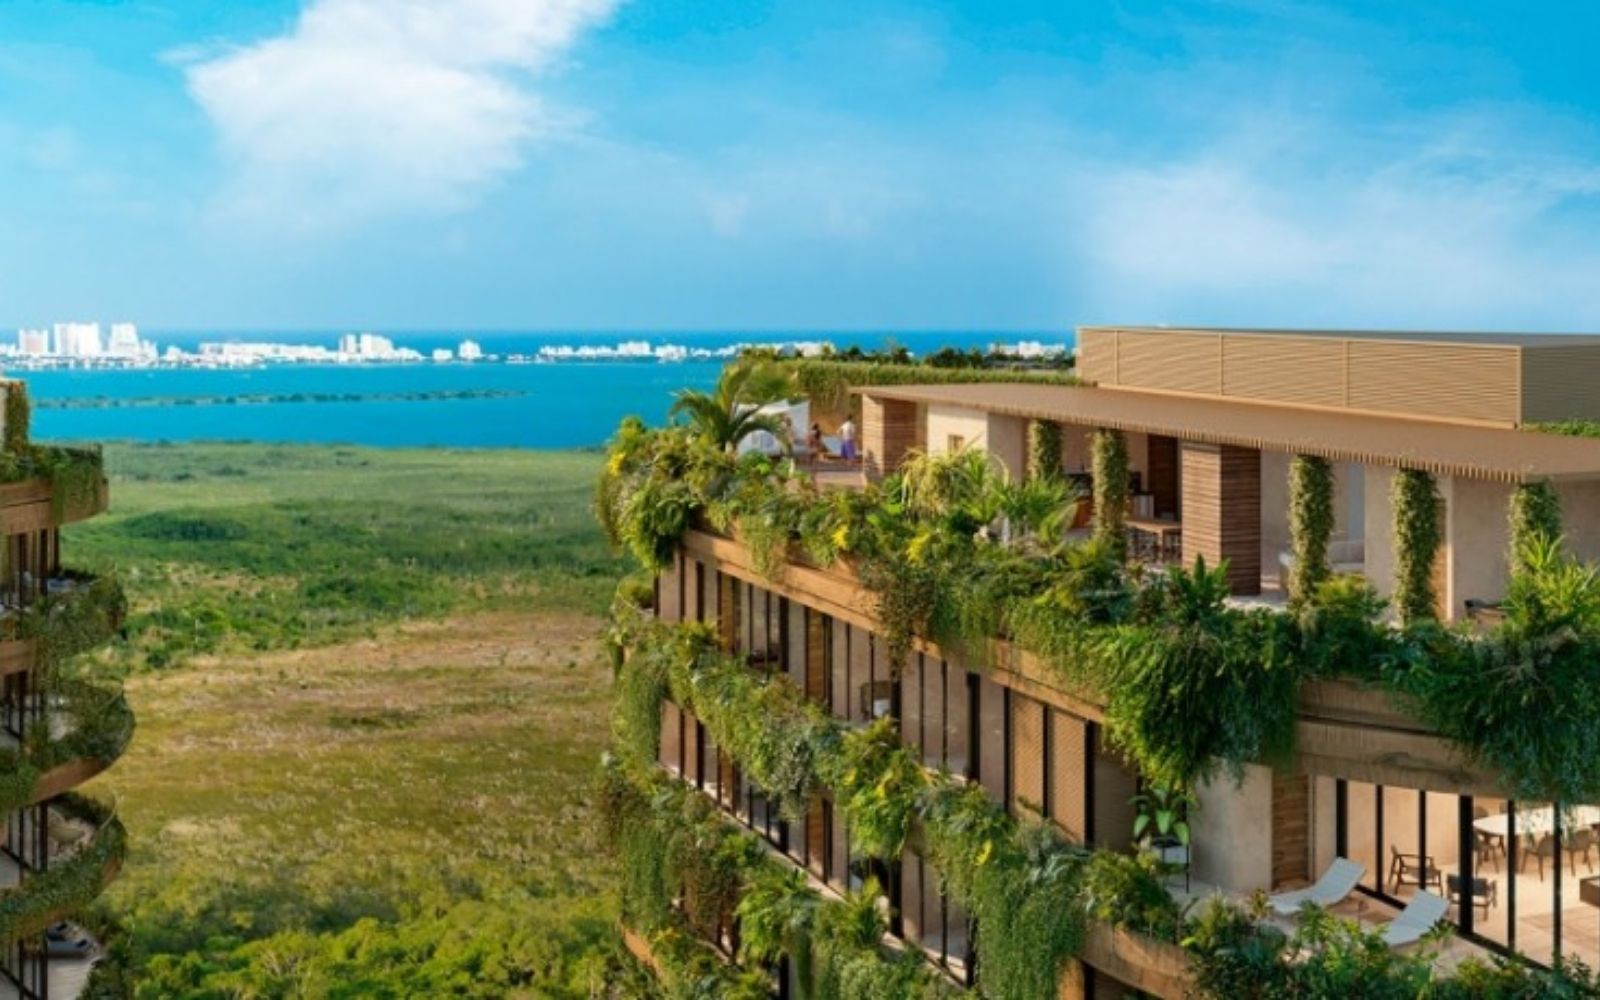 Condo con vista al mar y la marina, con amenidades: alberca infinity, spa, gimnasio, area lounge, salon de eventos, lobby, en Puerto Cancun